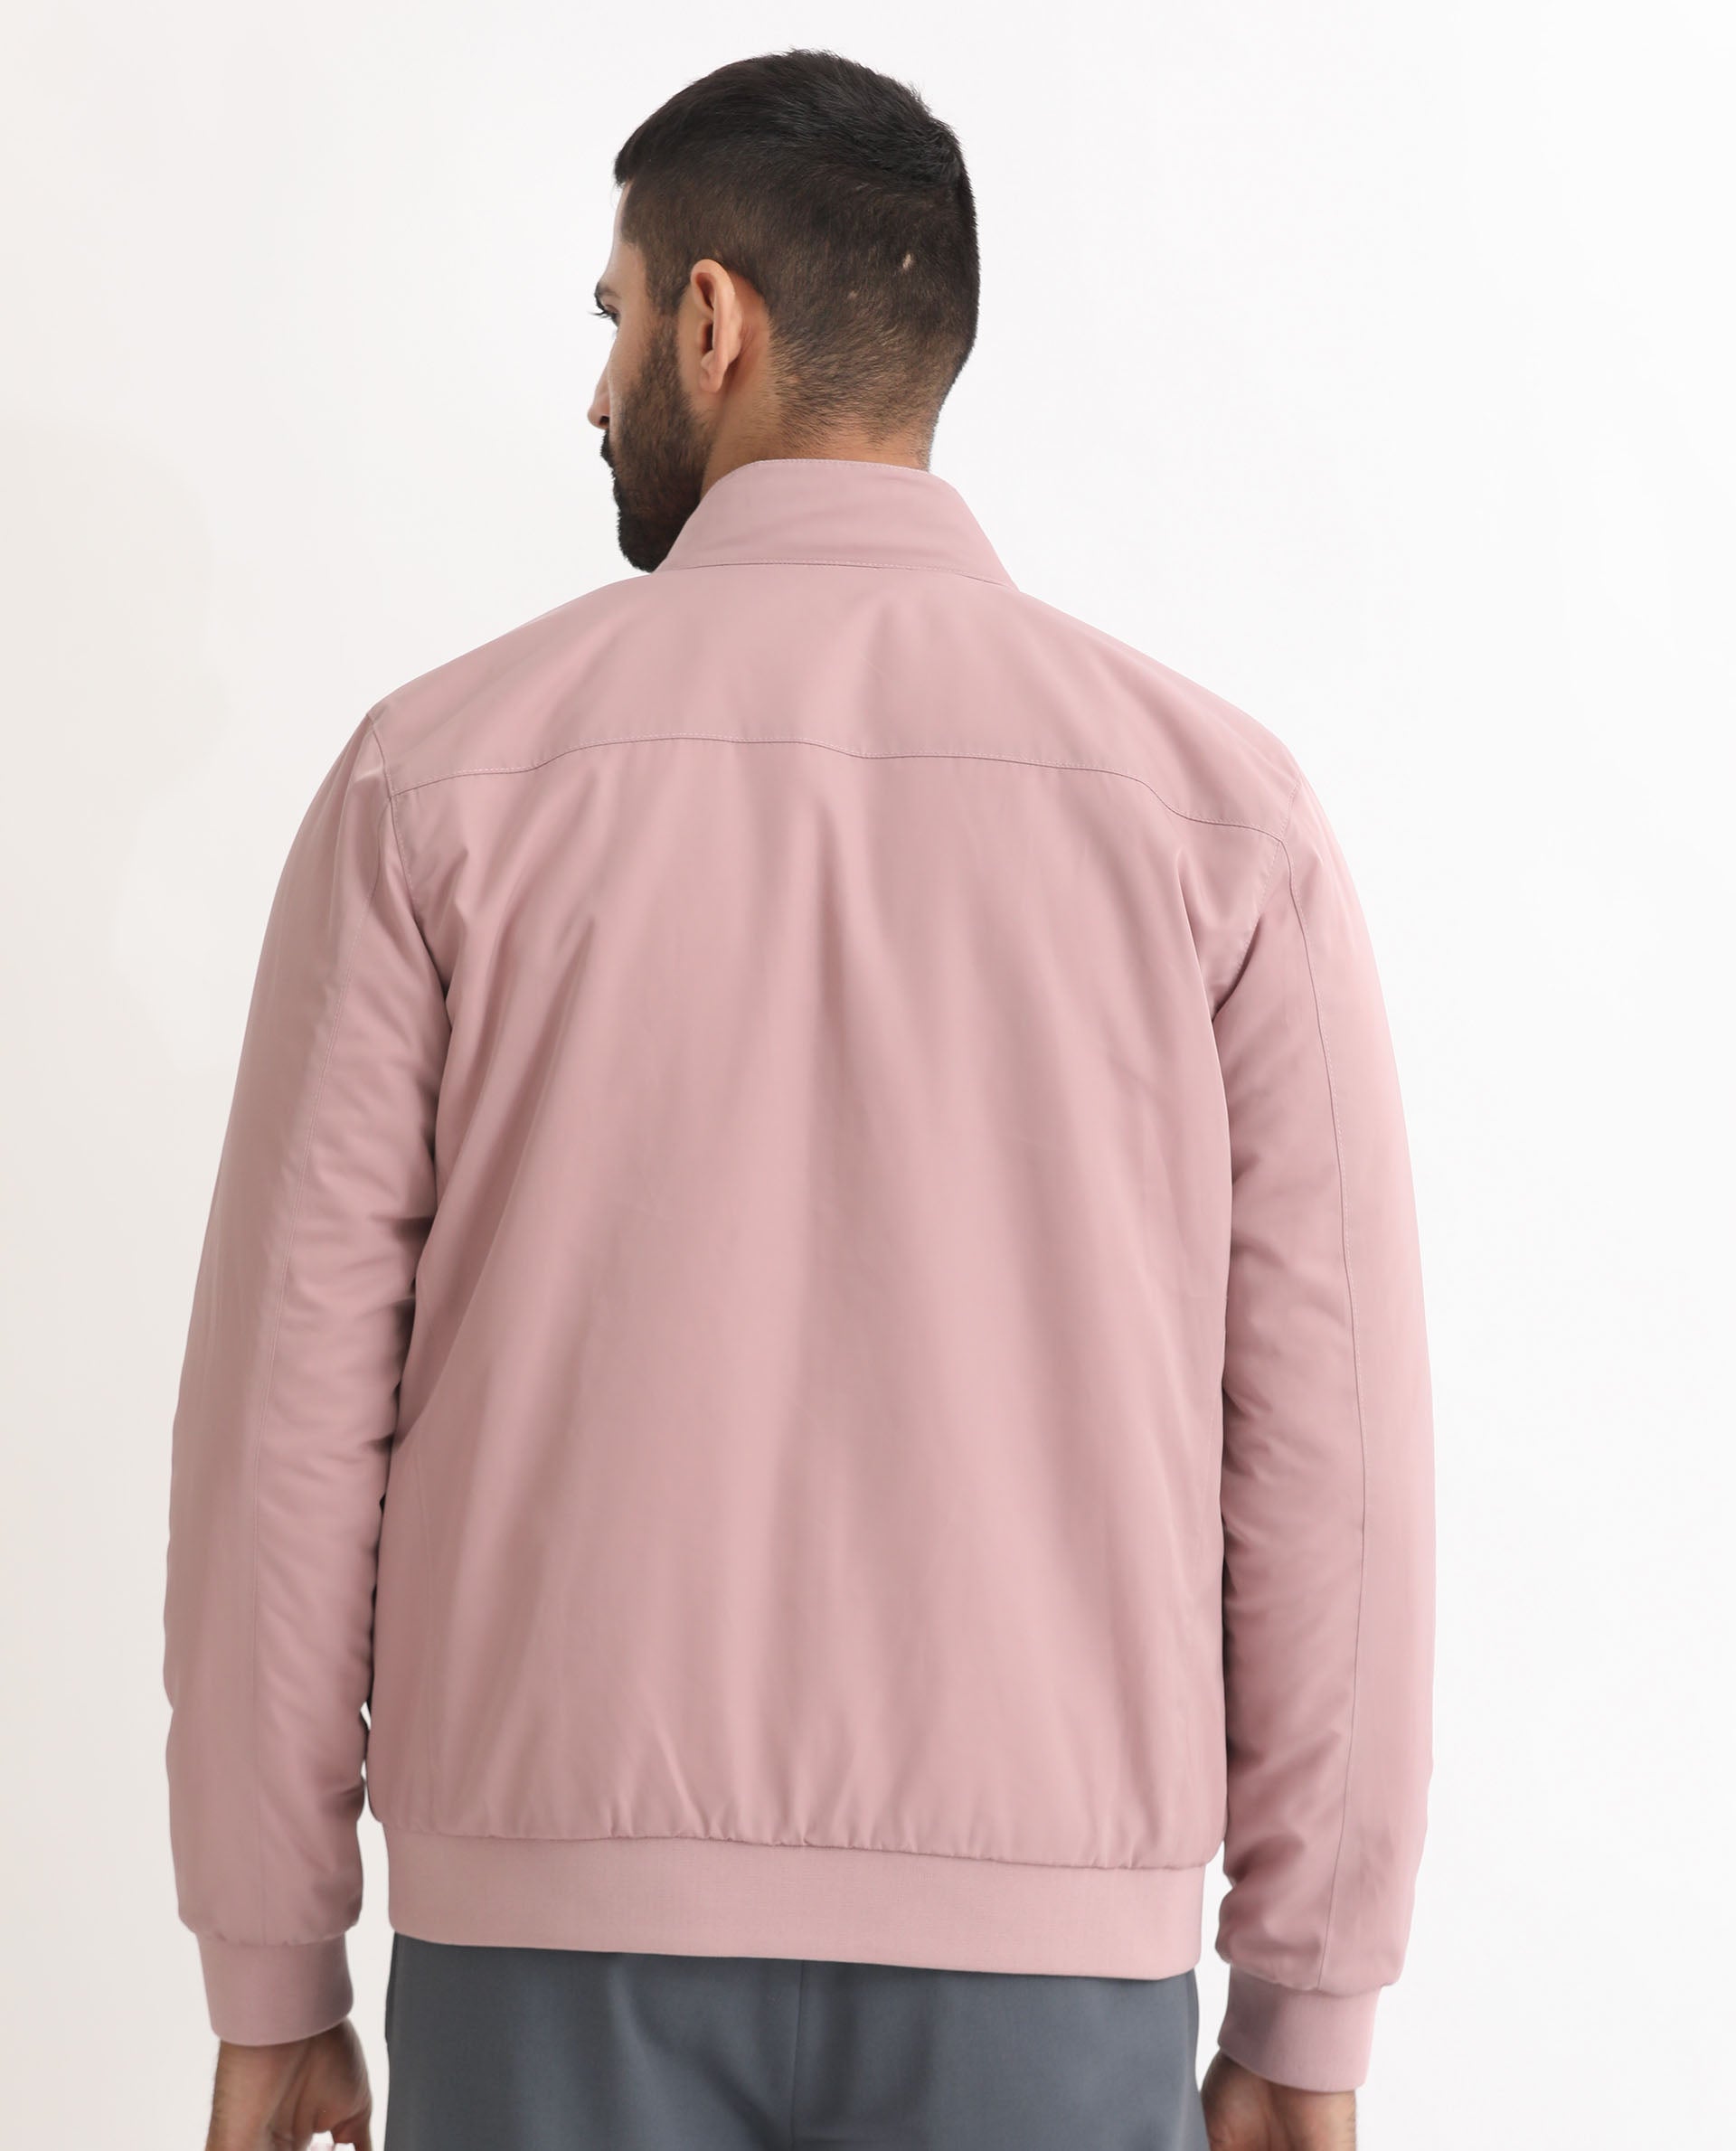 Bomber jacket - Powder pink - Kids | H&M IN